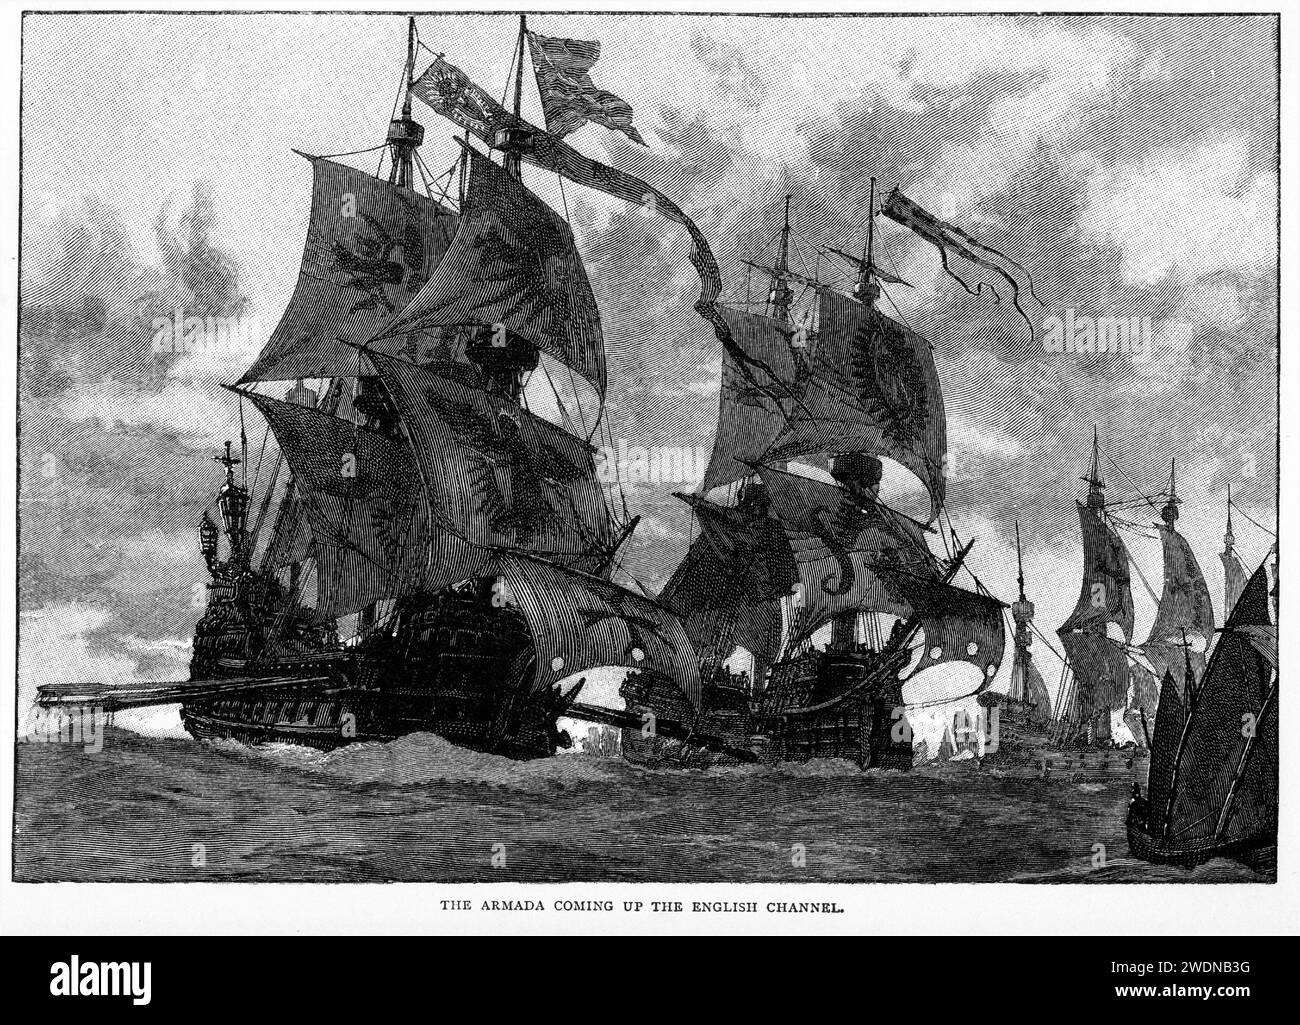 Incisione dell'armata spagnola che salpava sul canale inglese; pubblicato nel 1904 Foto Stock